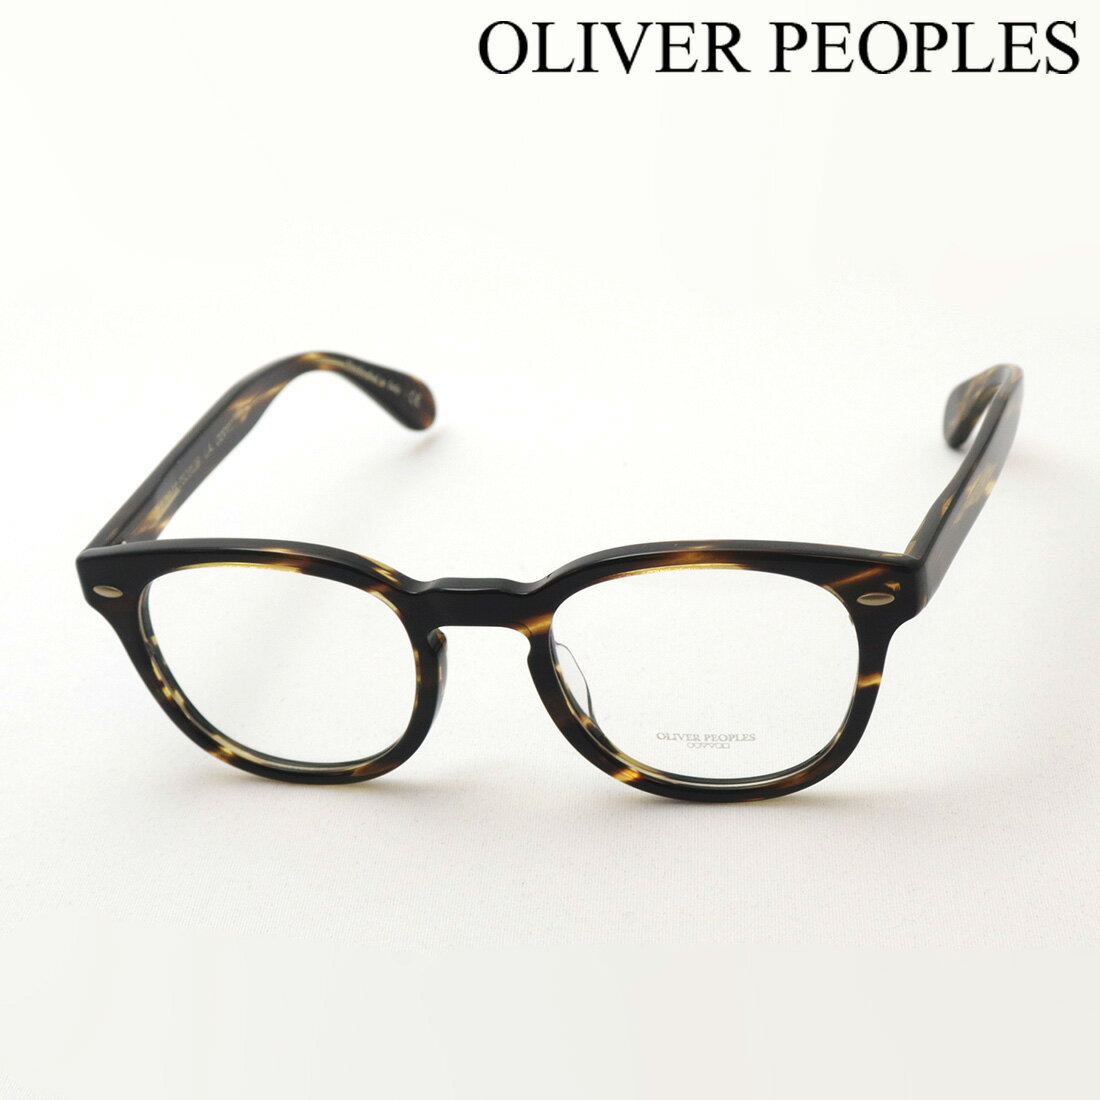 【オリバーピープルズ メガネ 正規販売店】 OLIVER PEOPLES OV5036A 1003L 49 SHELDRAKE 伊達メガネ 度付き ブルーライト カット 眼鏡 黒縁 Made In Italy ボストン トータス系